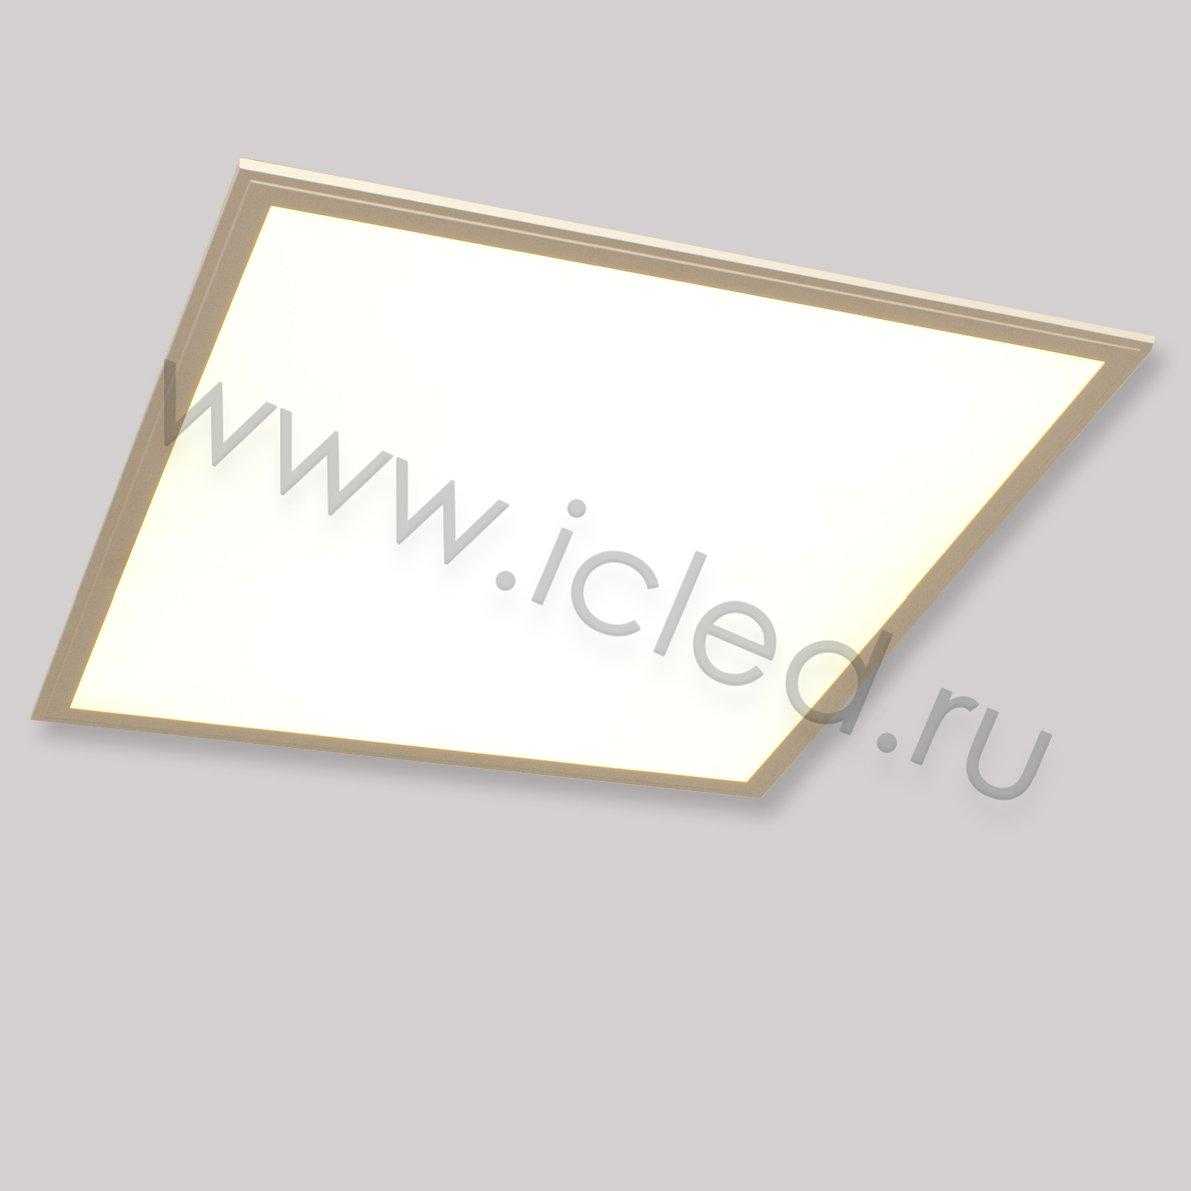 Светодиодные светильники Светодиодная панель ультратонкая S L600 B79 (42W, 220V, warm white)